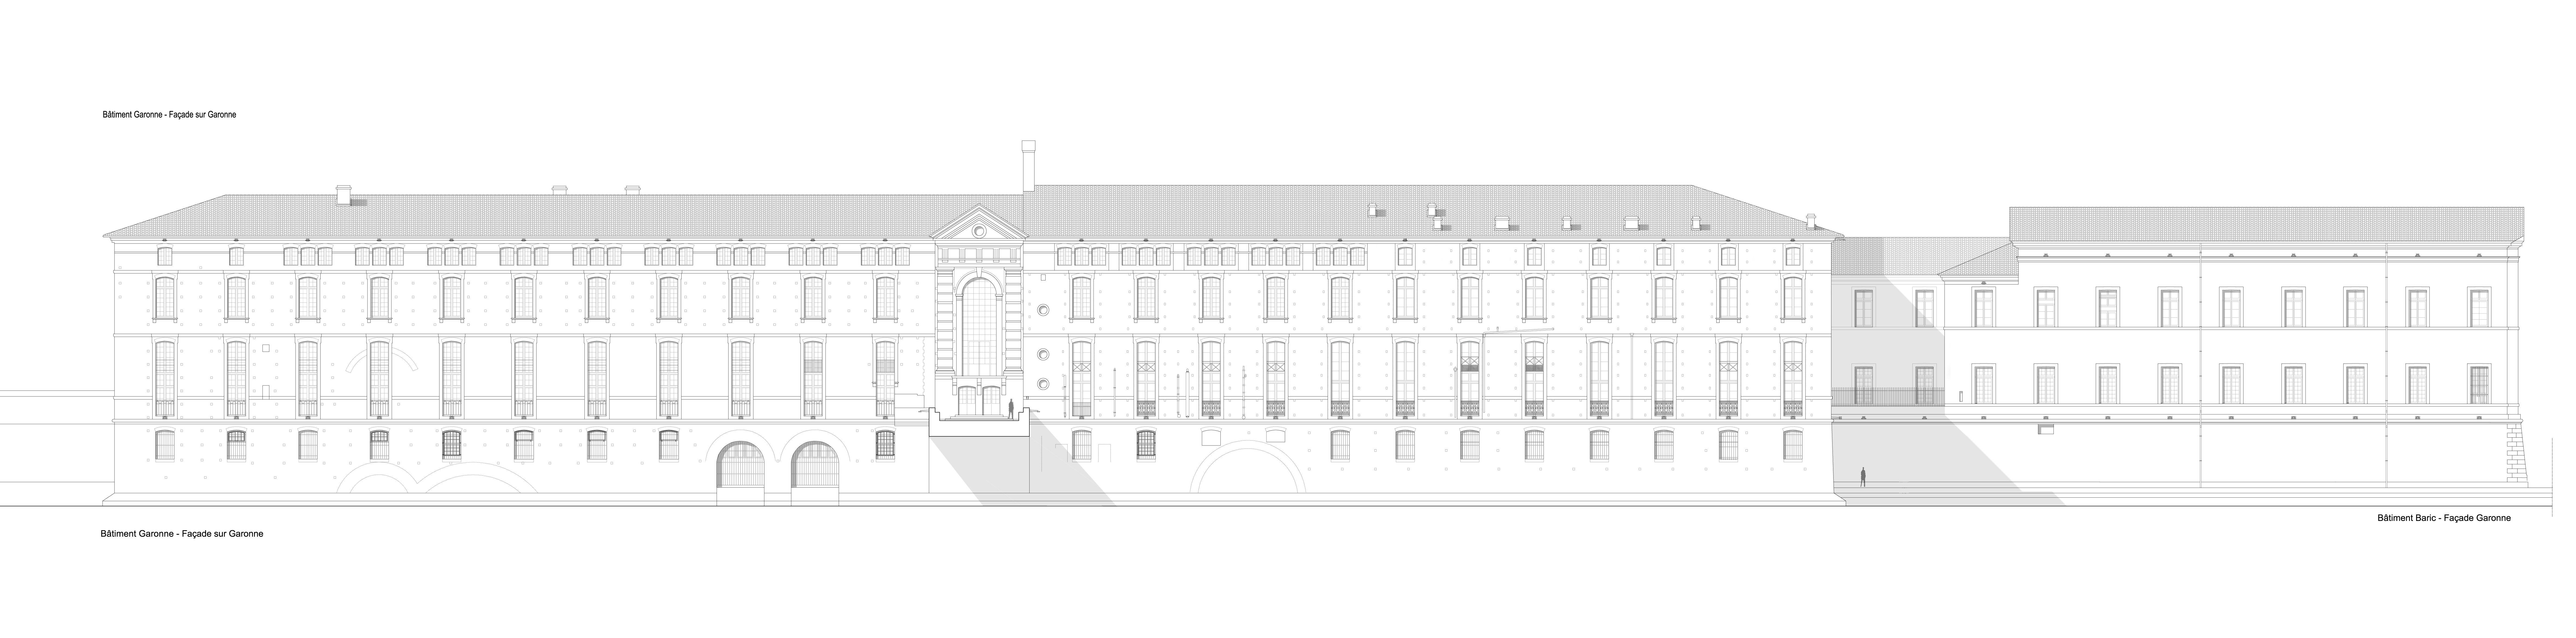 Agence Caillault ACMH – TOULOUSE – Hôtel-Dieu – Élévation de la façade sur la Garonne